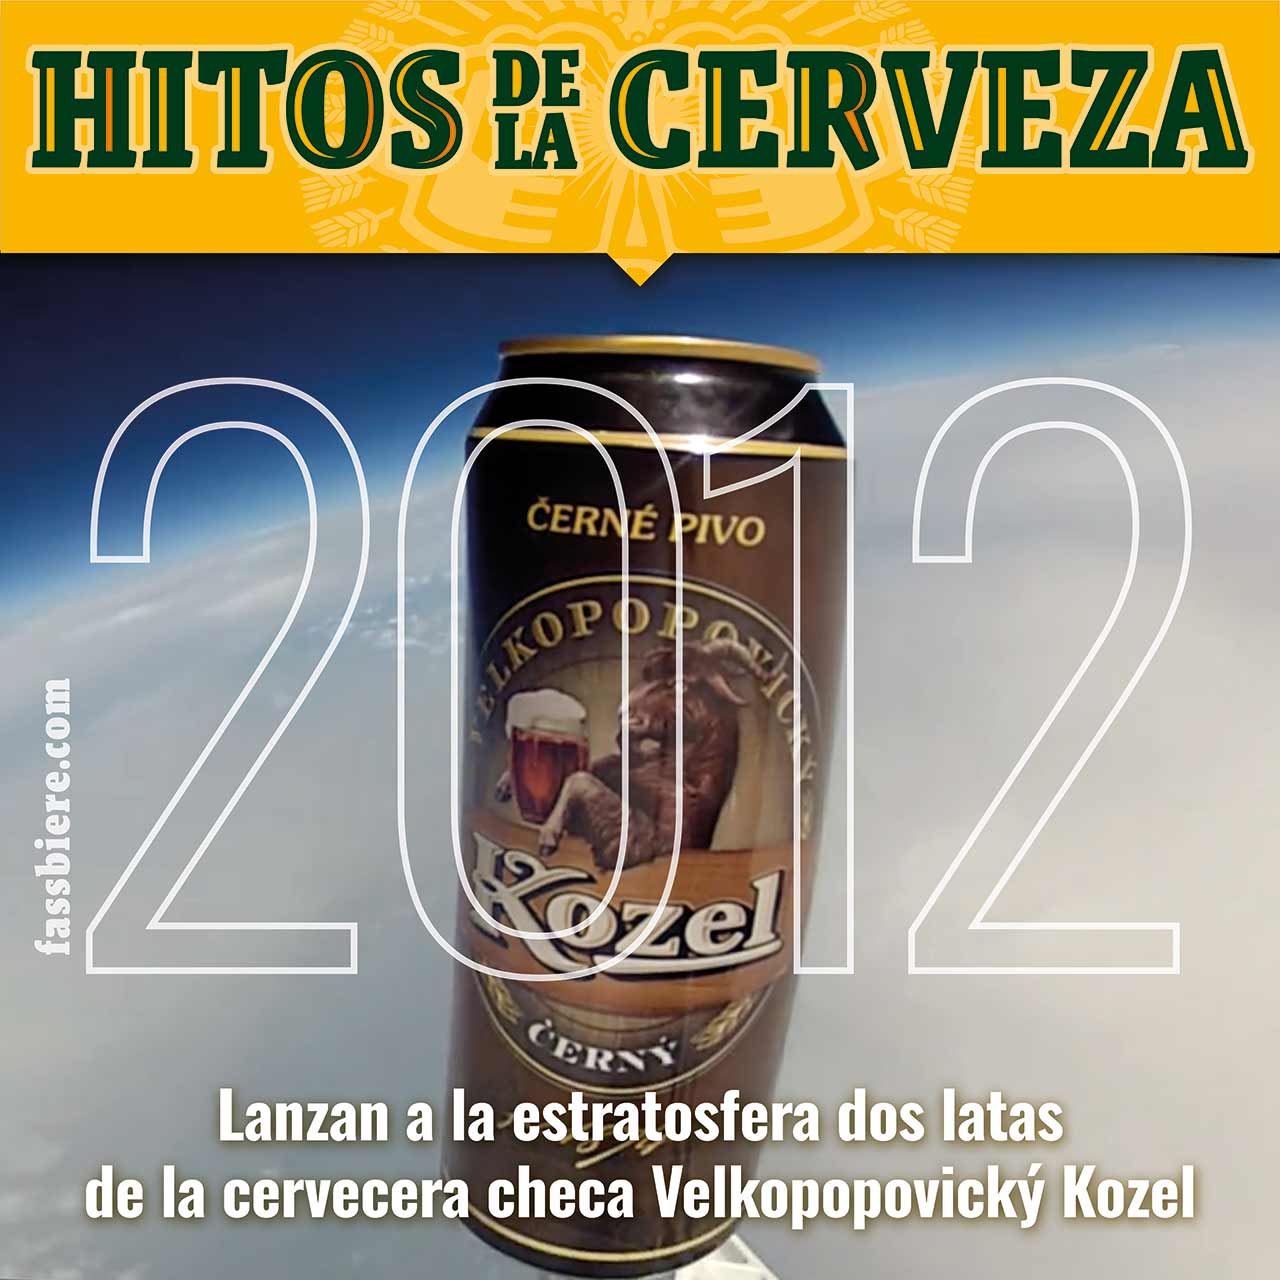 Hitos de la Cerveza en Fassbiere: En 2012 dos latas de la cerveza checa Kozel son lanzadas desde Rusia hasta la estratosfera.